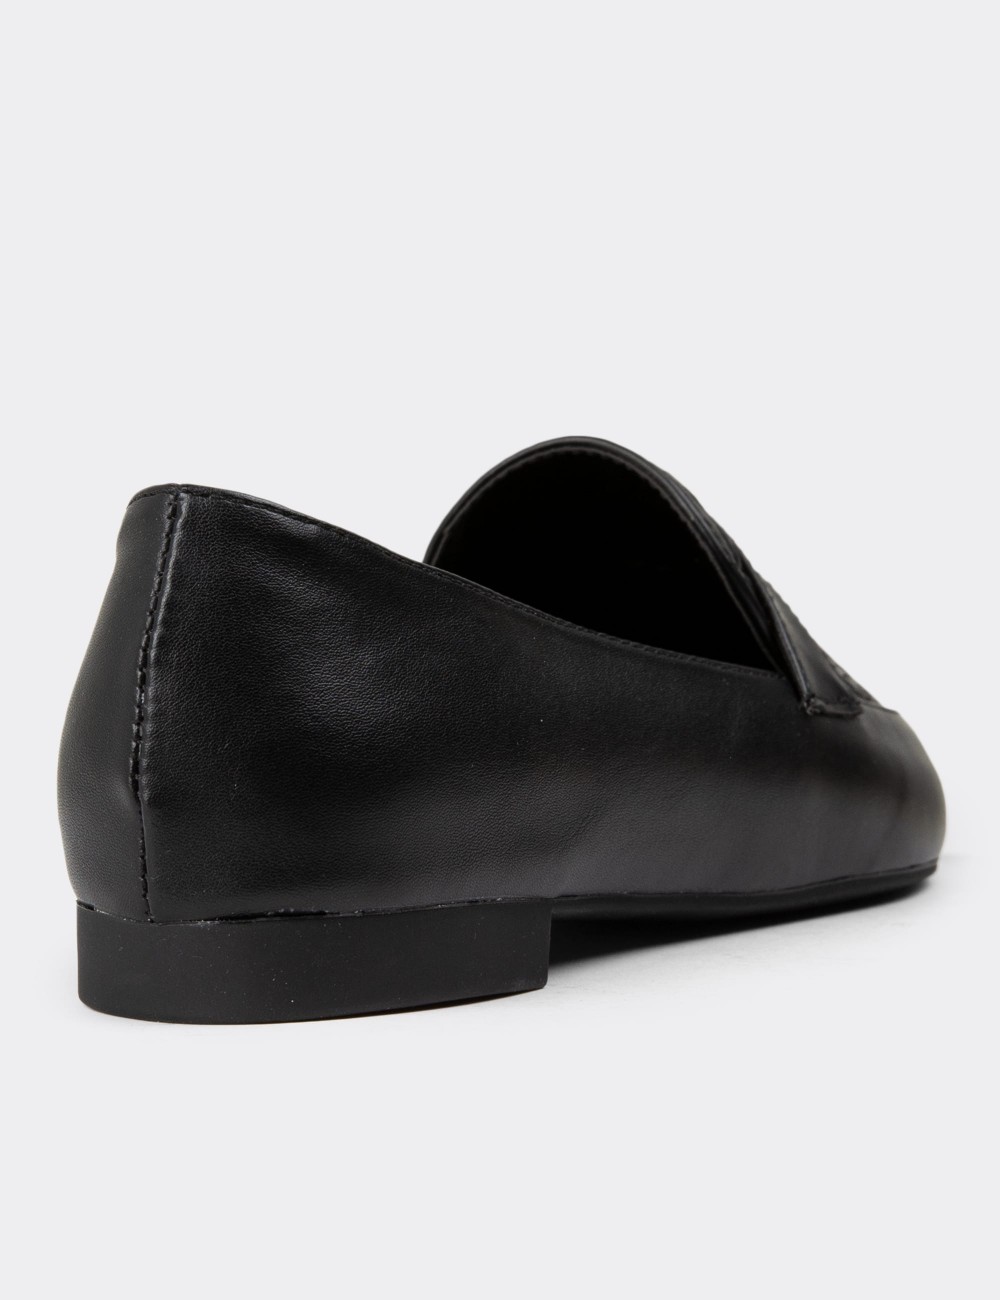 Black Loafers - 38602ZSYHC01